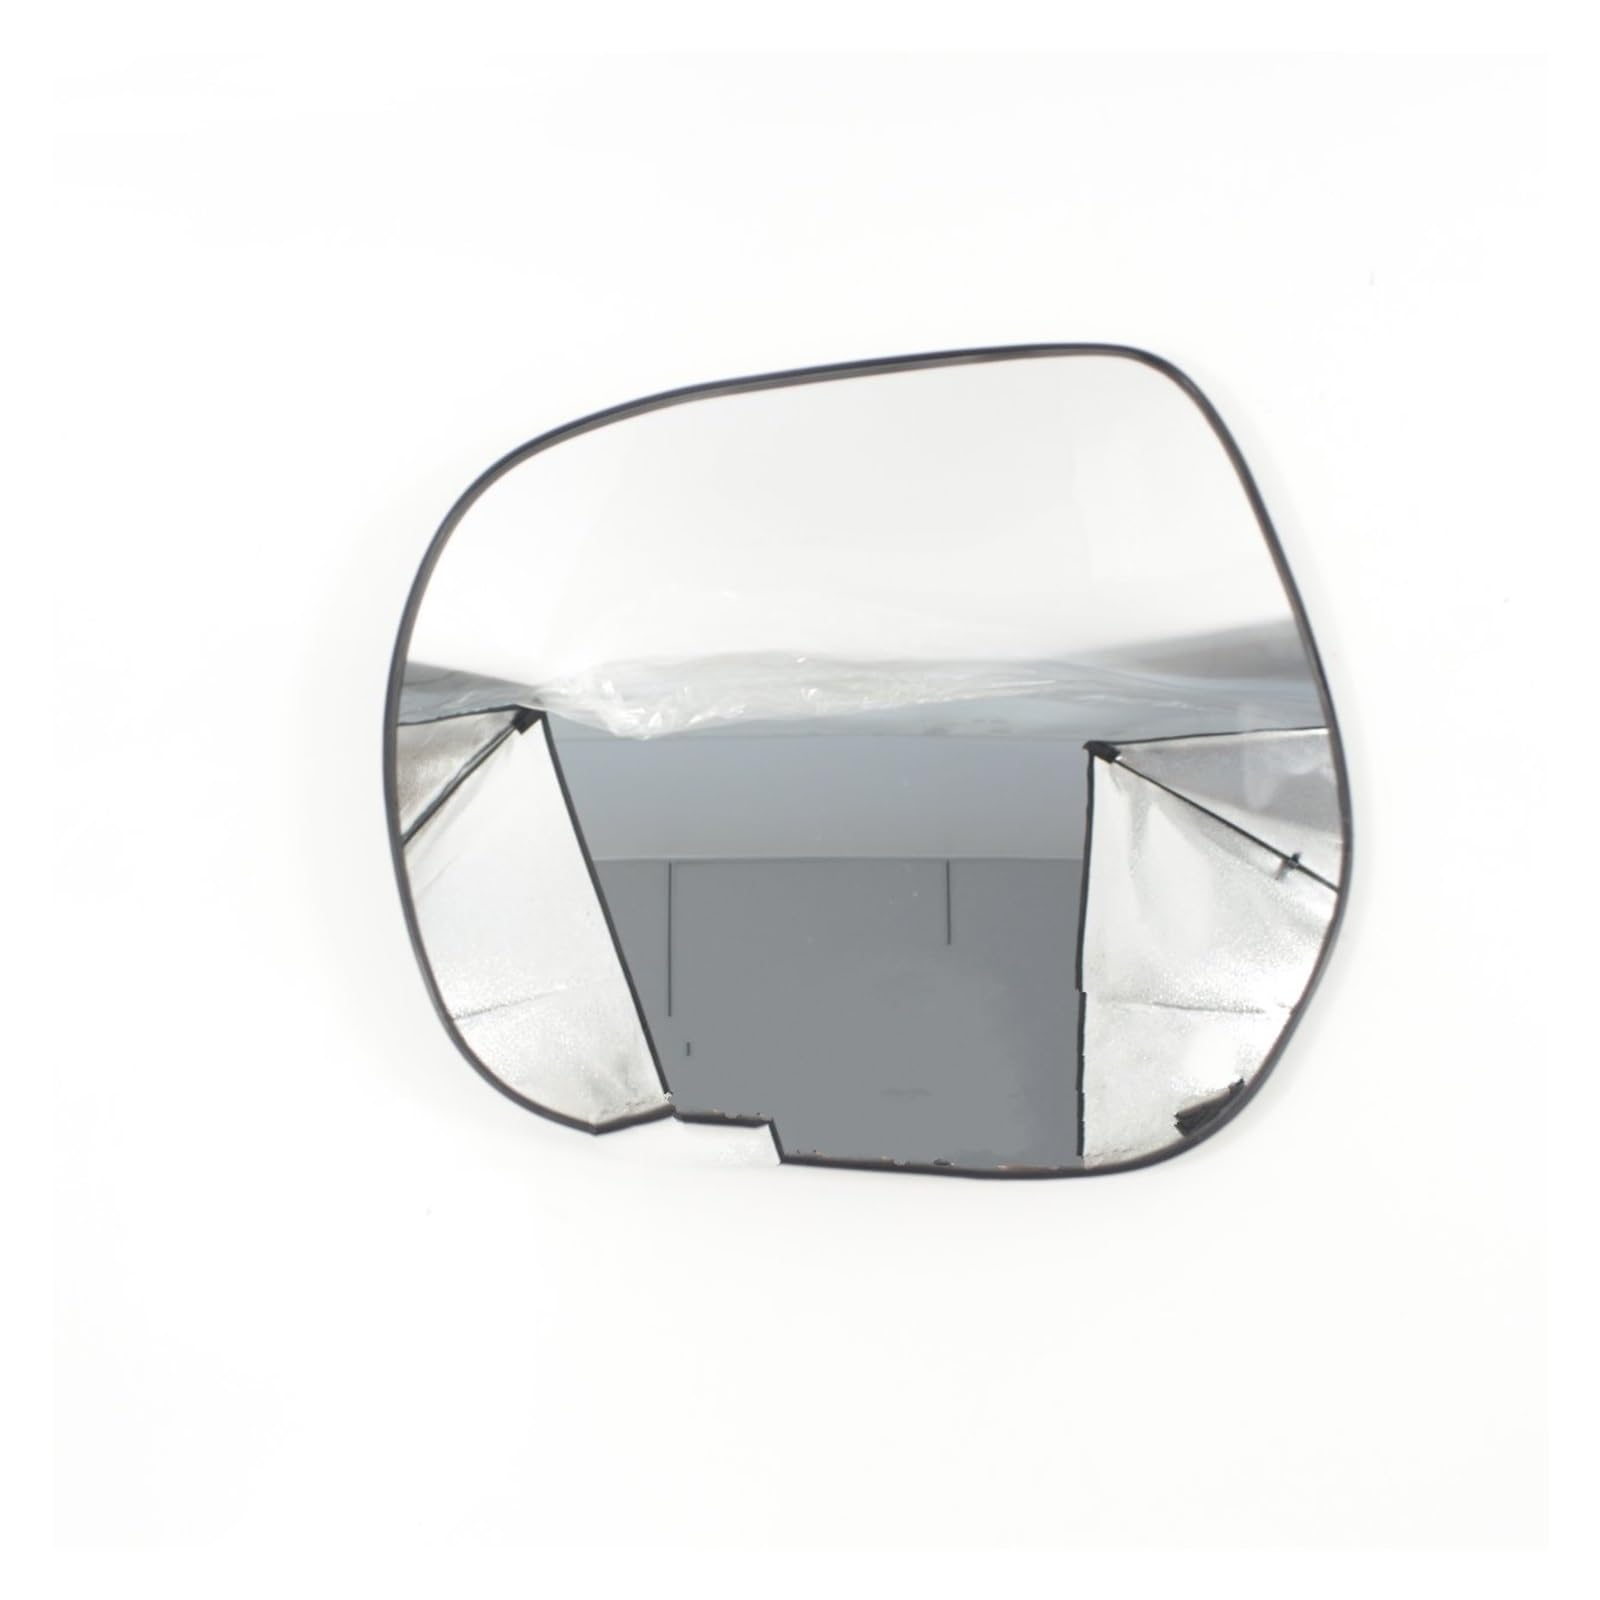 Spiegelglas Ersatz Für Toyota Für Land Für Cruiser Für Prado 150 Serie 2010-2018 Auto Tür Flügel Spiegel Glas Spiegelglas (Farbe : Left side) von MACUN